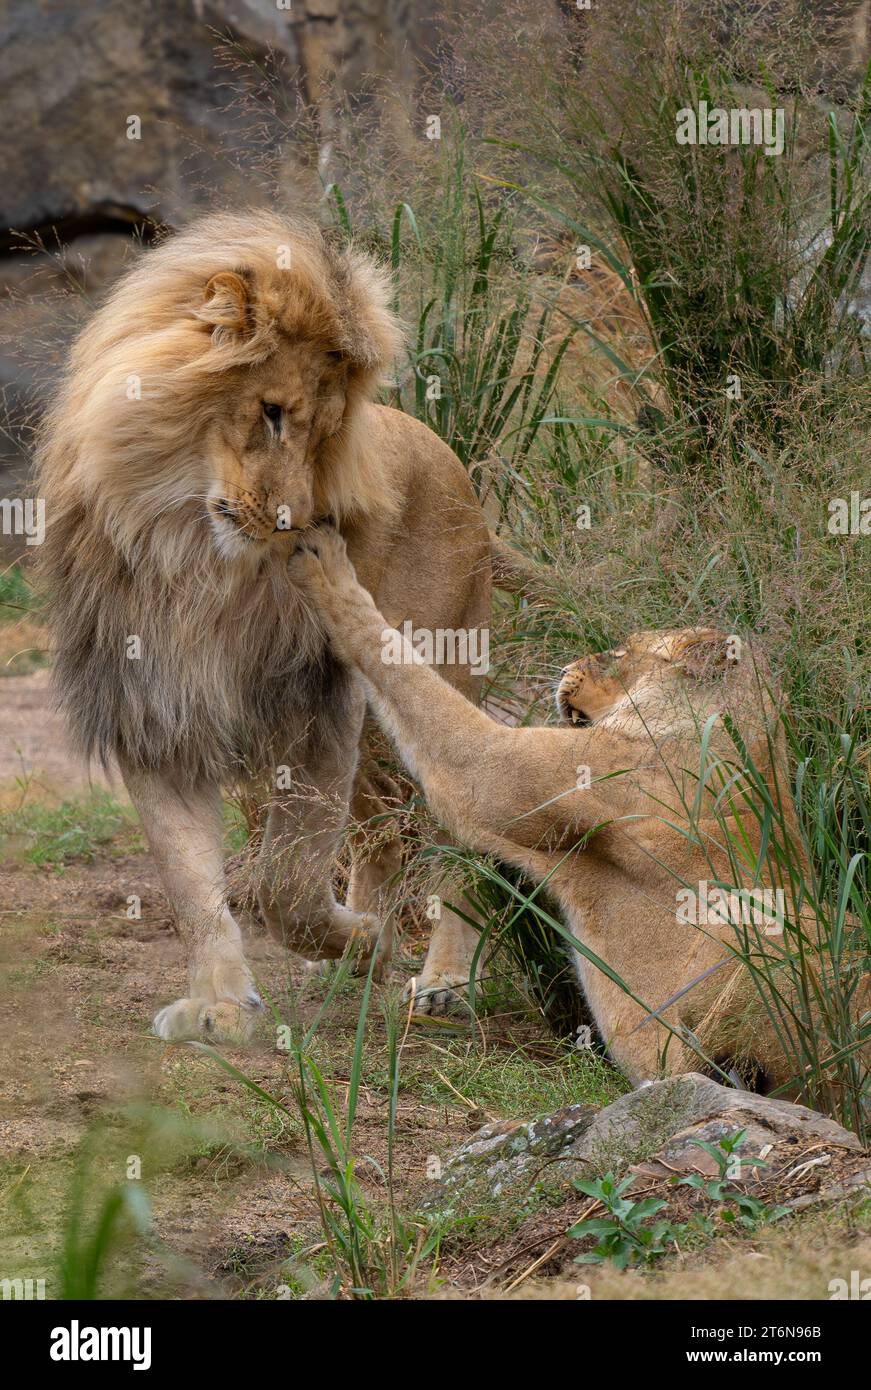 Löwe - Panthera leo, wunderschönes, ikonisches Tier aus afrikanischen Savannen, Amboseli, Kenia. Stockfoto